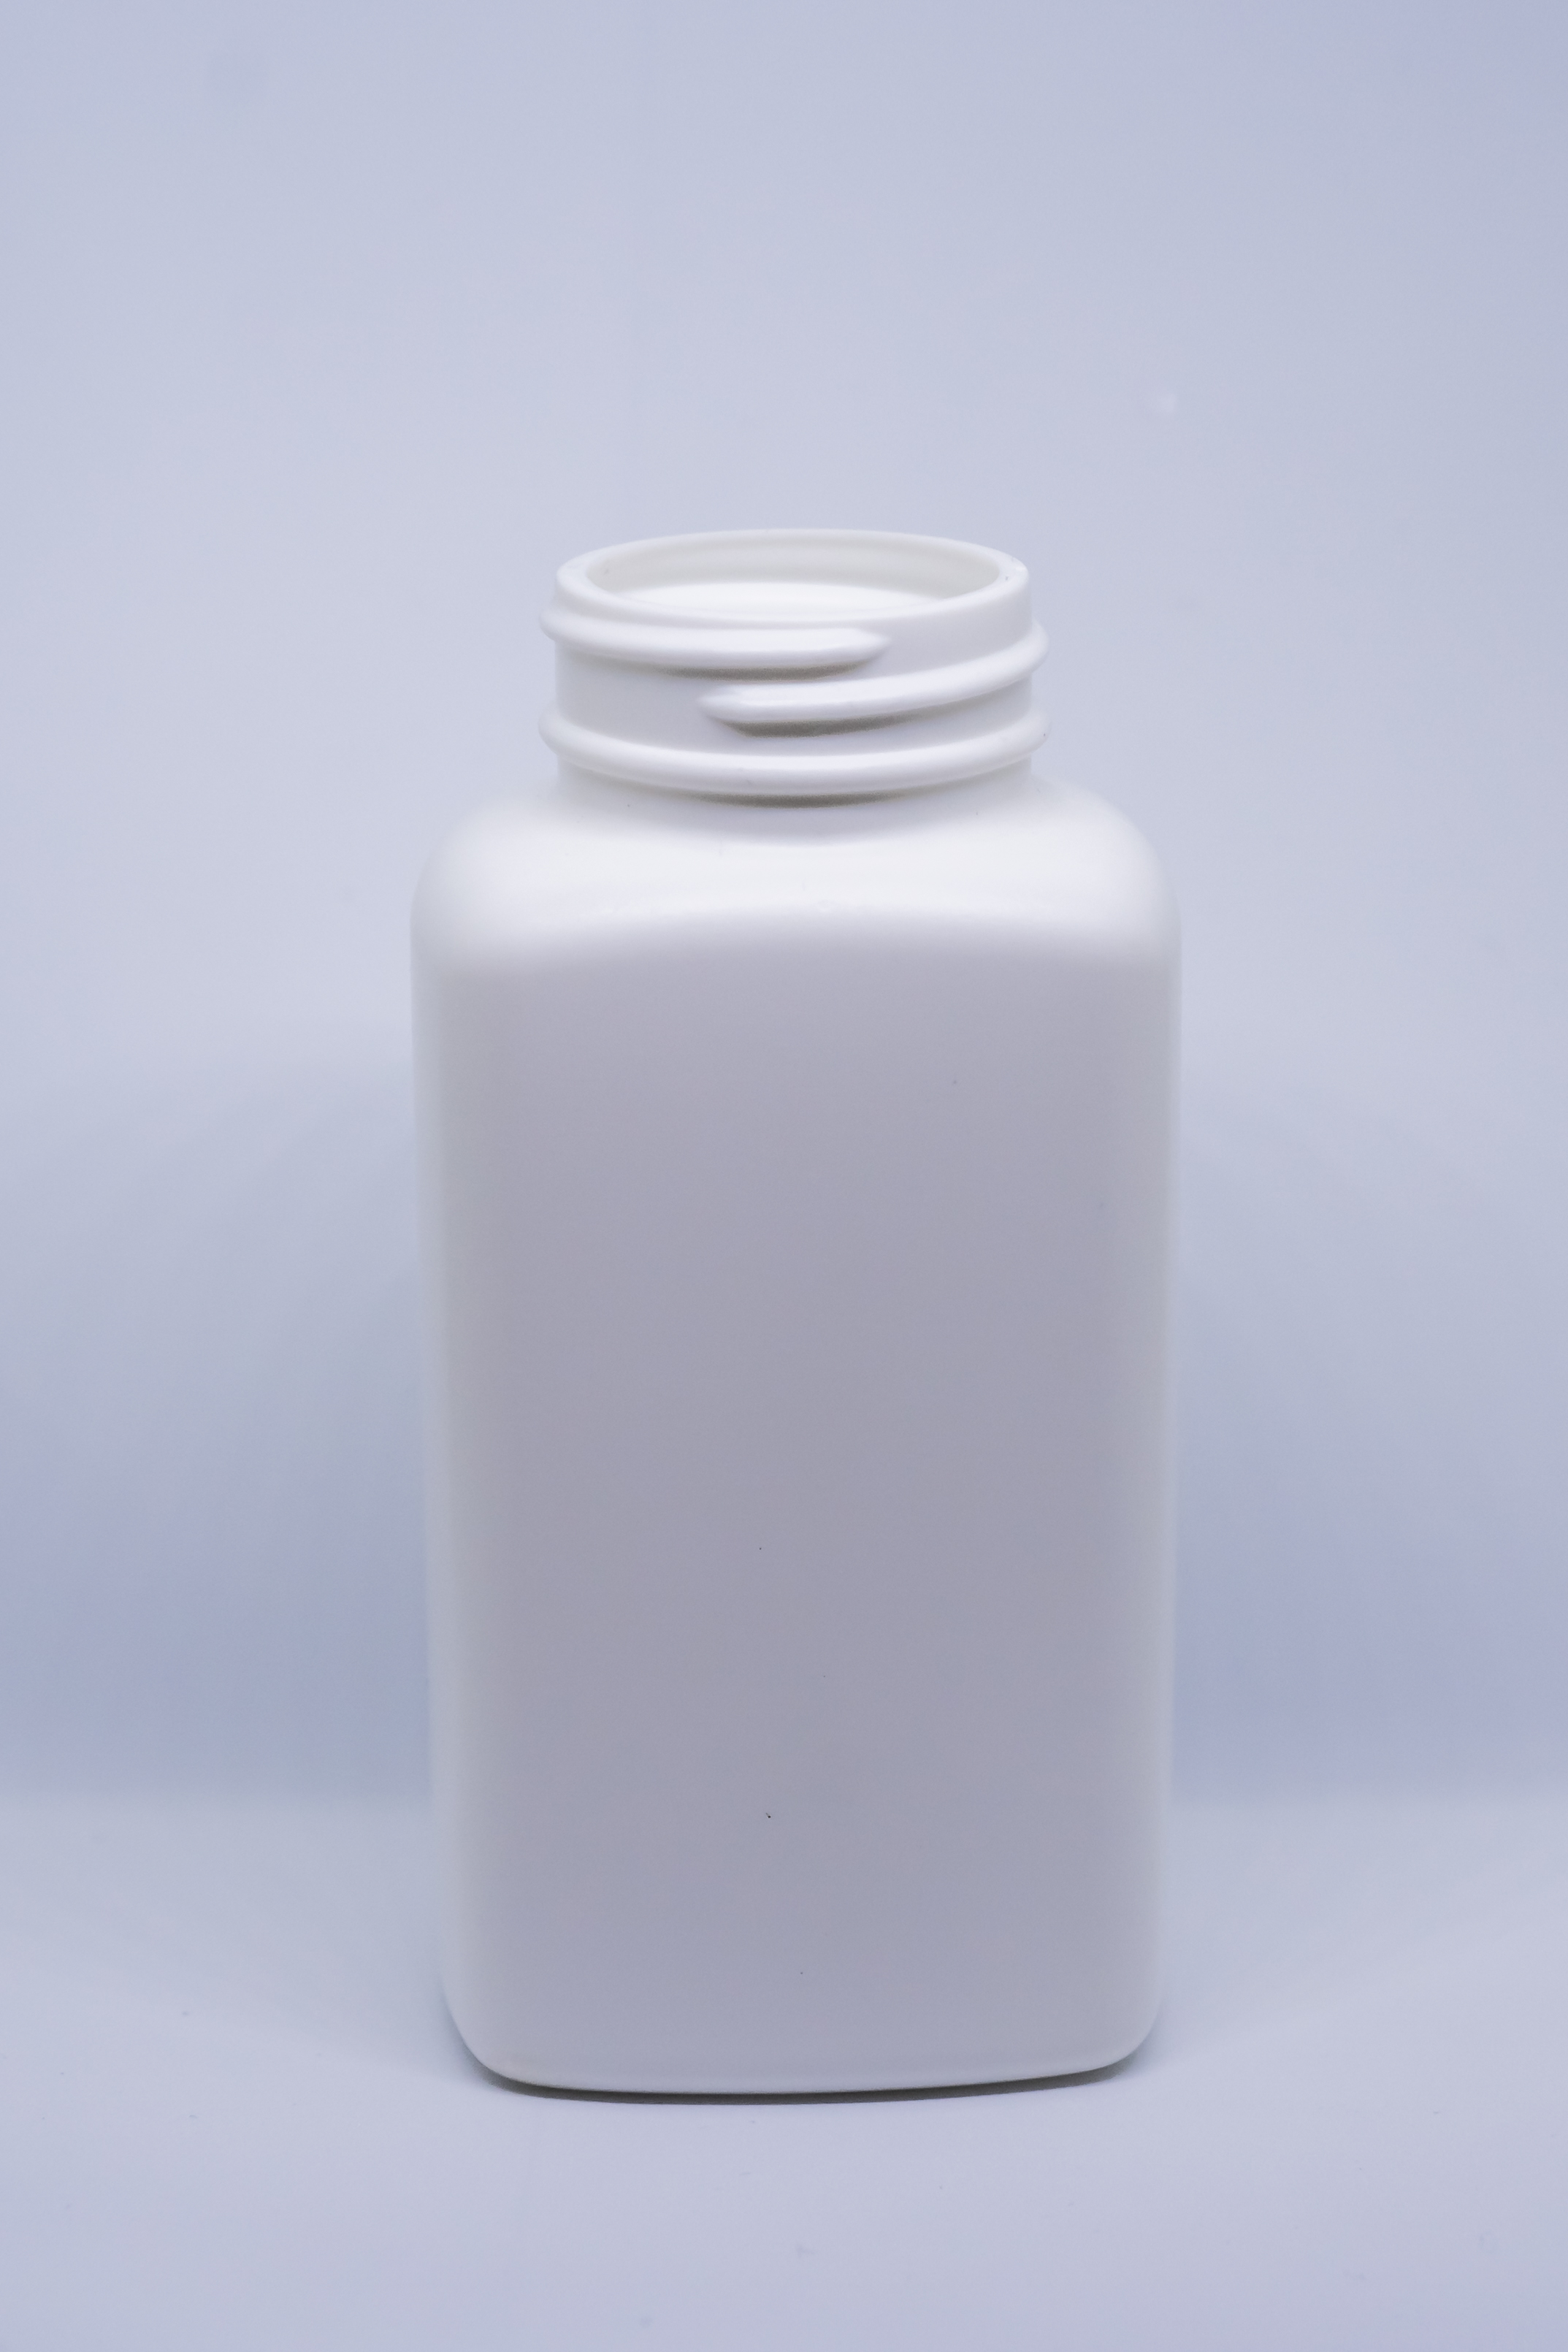 בקבוק מלבני 190 מ"ל HDPE פייה 38 מ"מ לבן